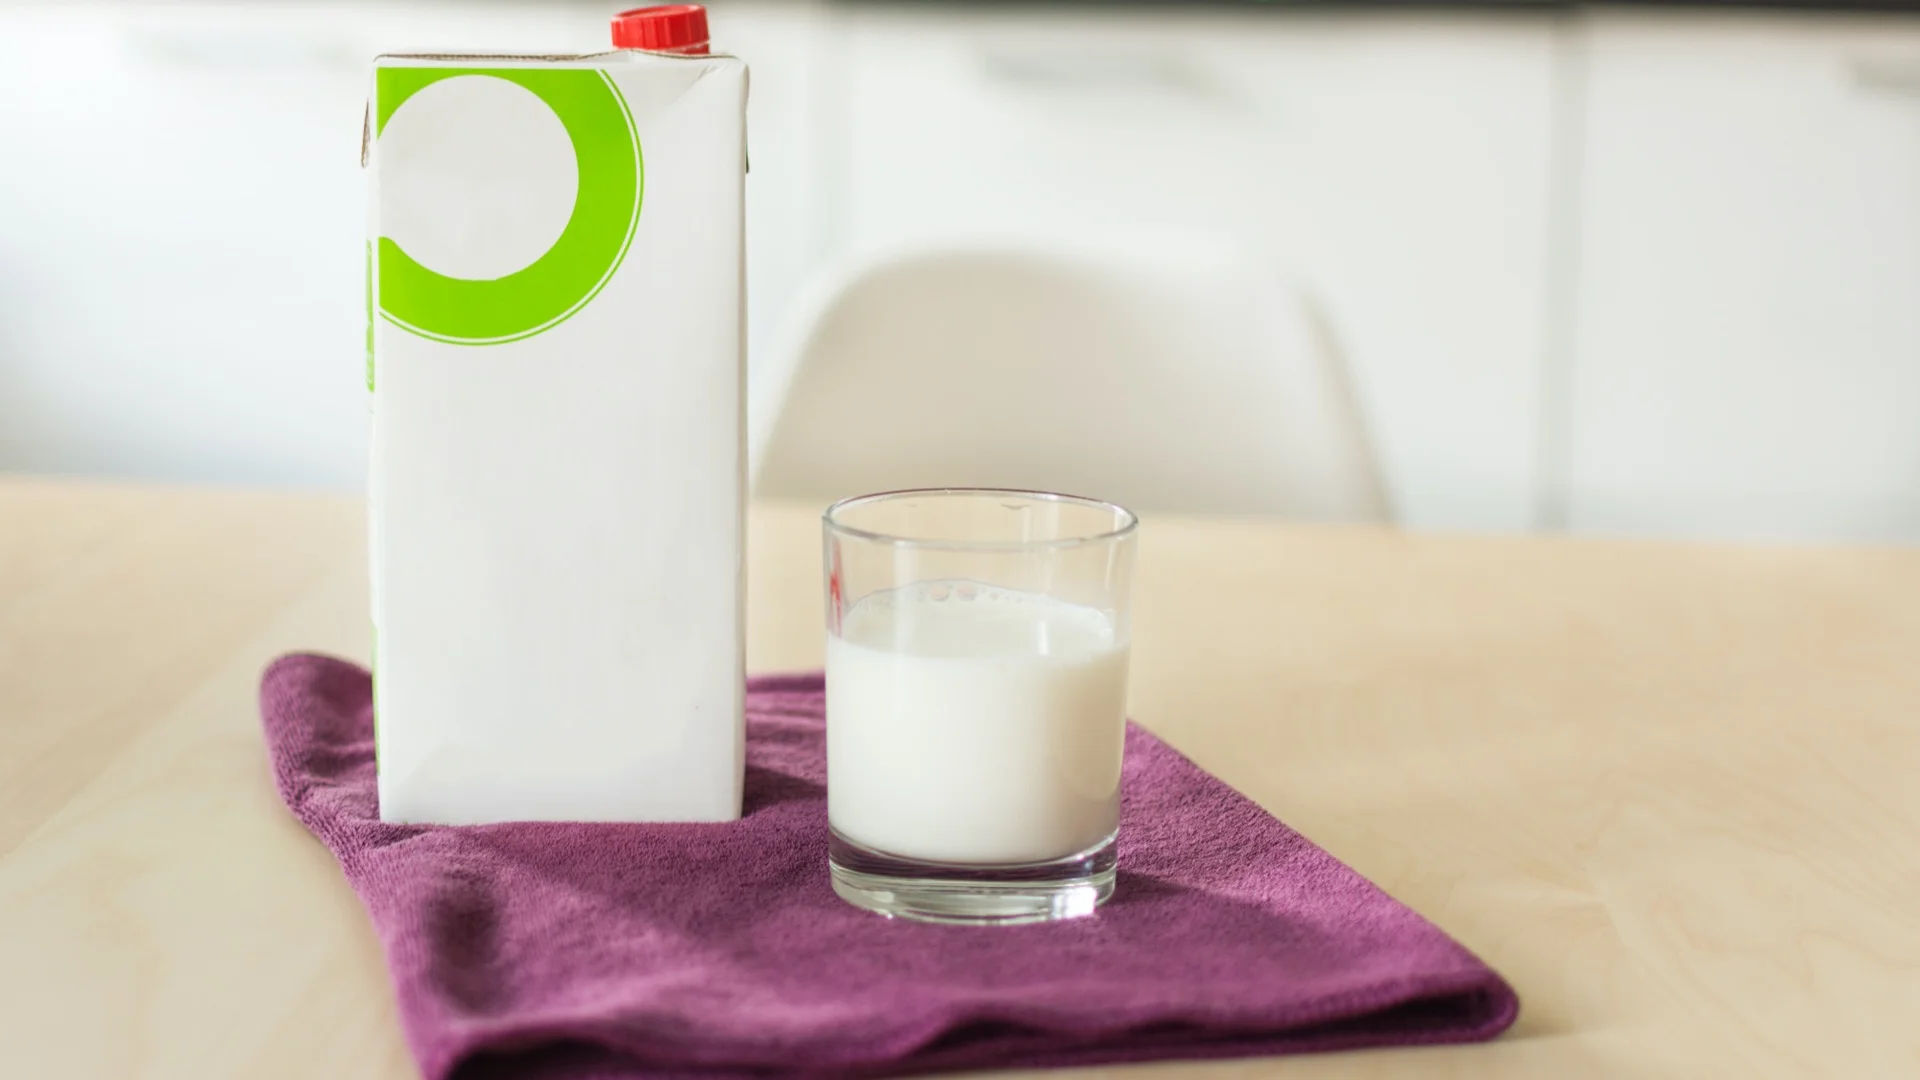 Milk in a recipe: 4 oz (approx. 120 ml)